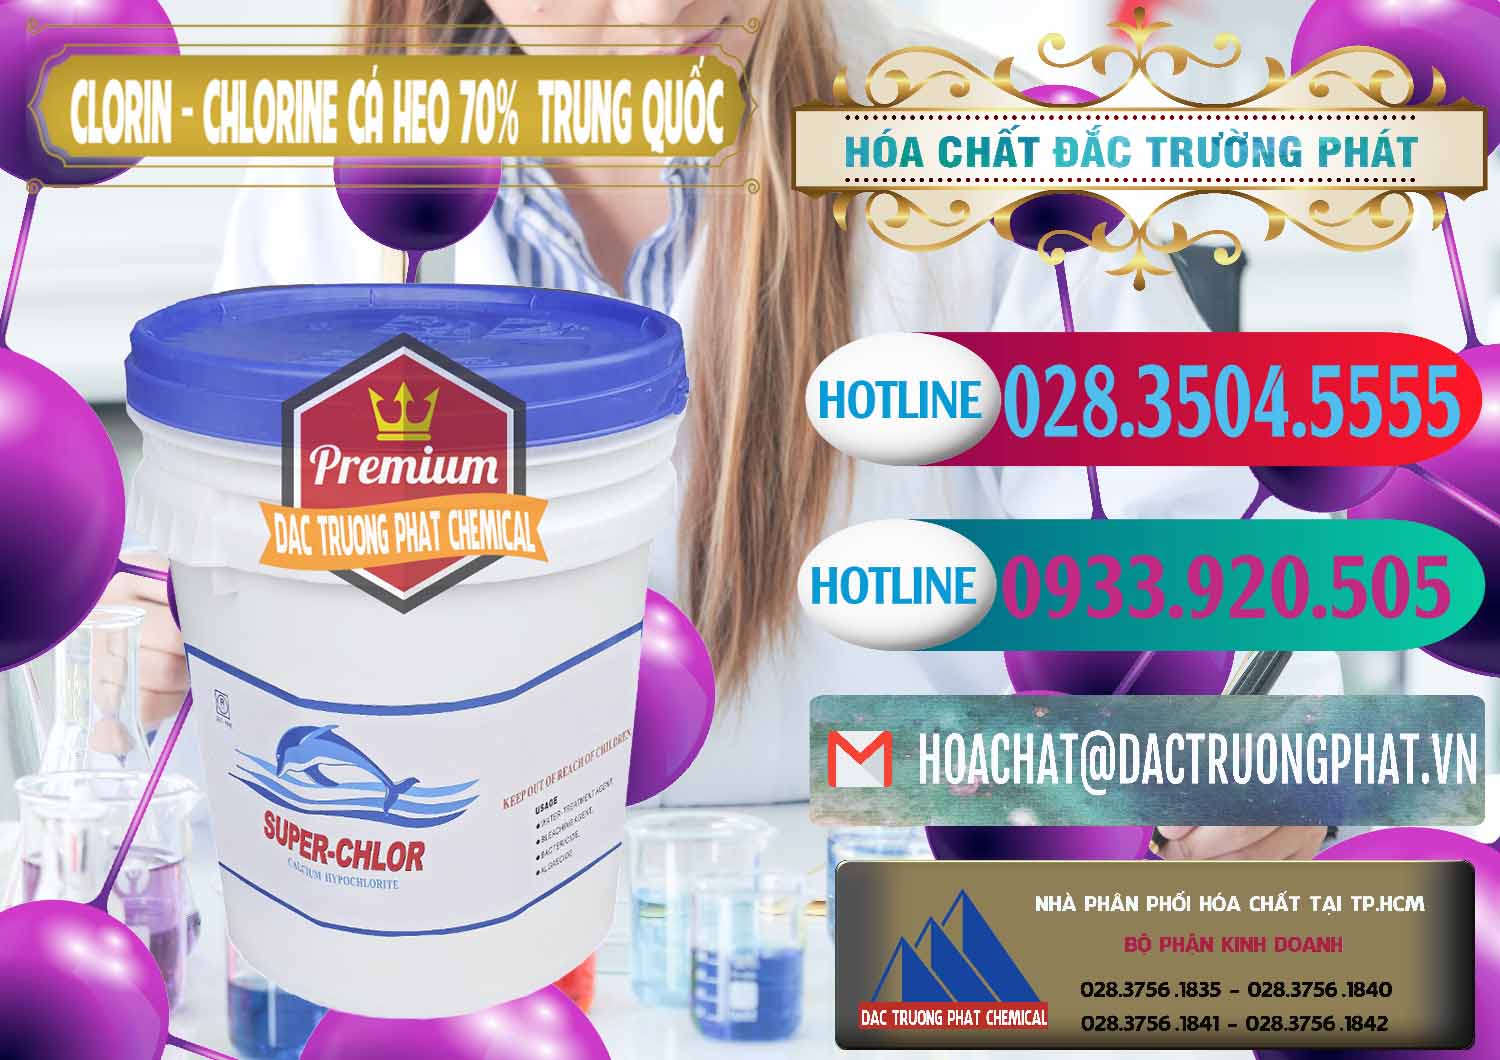 Đơn vị cung cấp & bán Clorin - Chlorine Cá Heo 70% Super Chlor Nắp Xanh Trung Quốc China - 0209 - Nơi chuyên phân phối ( kinh doanh ) hóa chất tại TP.HCM - truongphat.vn